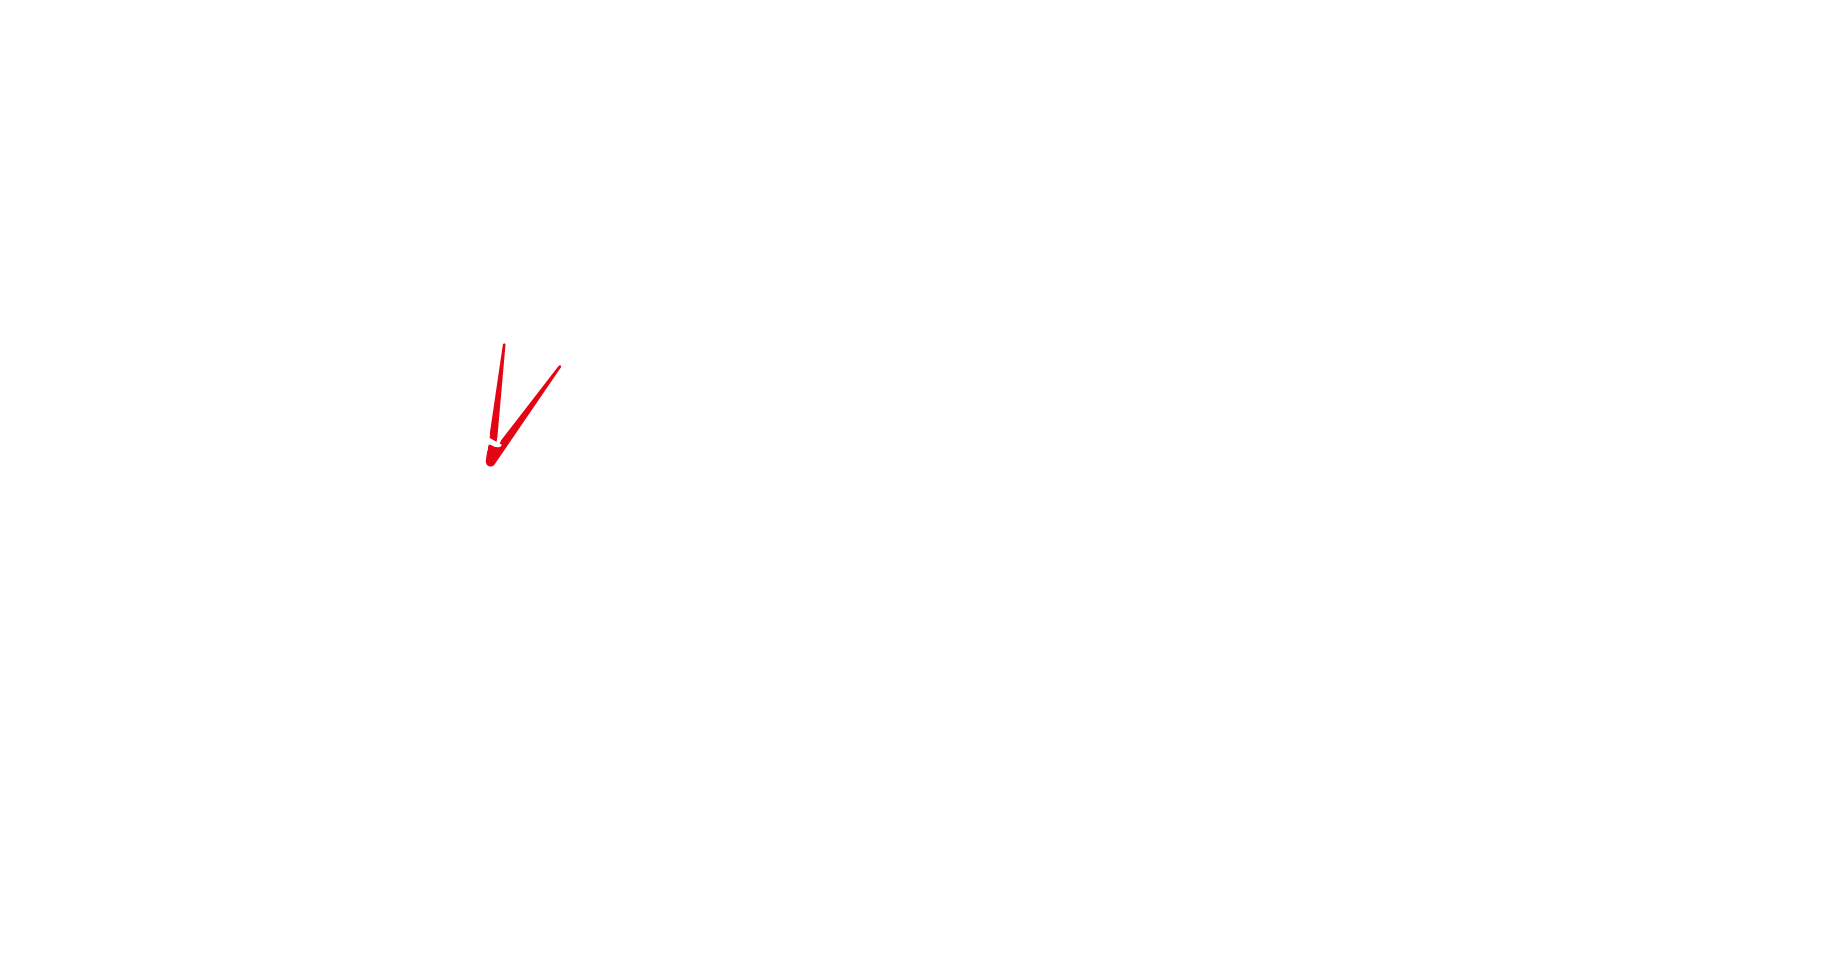 ICAEW logo